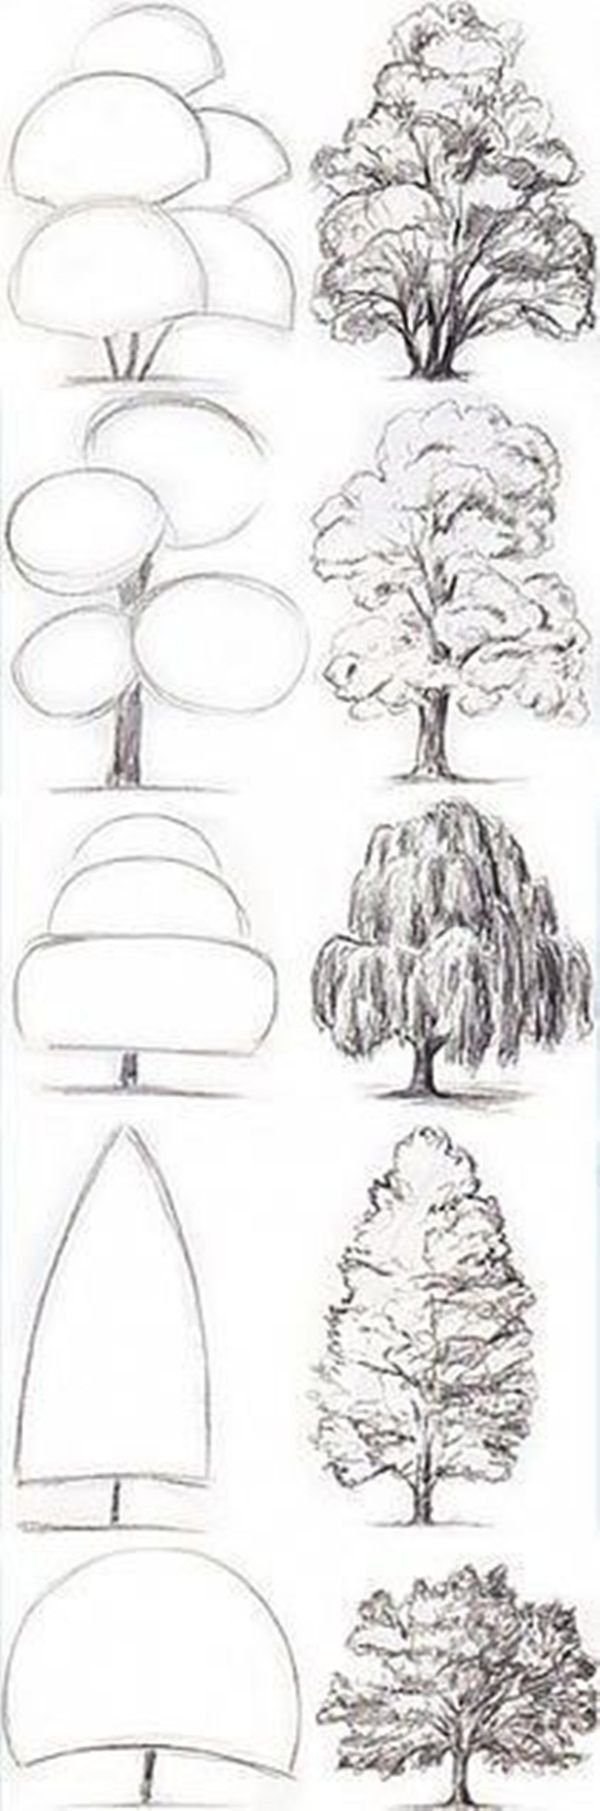 Рисование деревьев карандашом